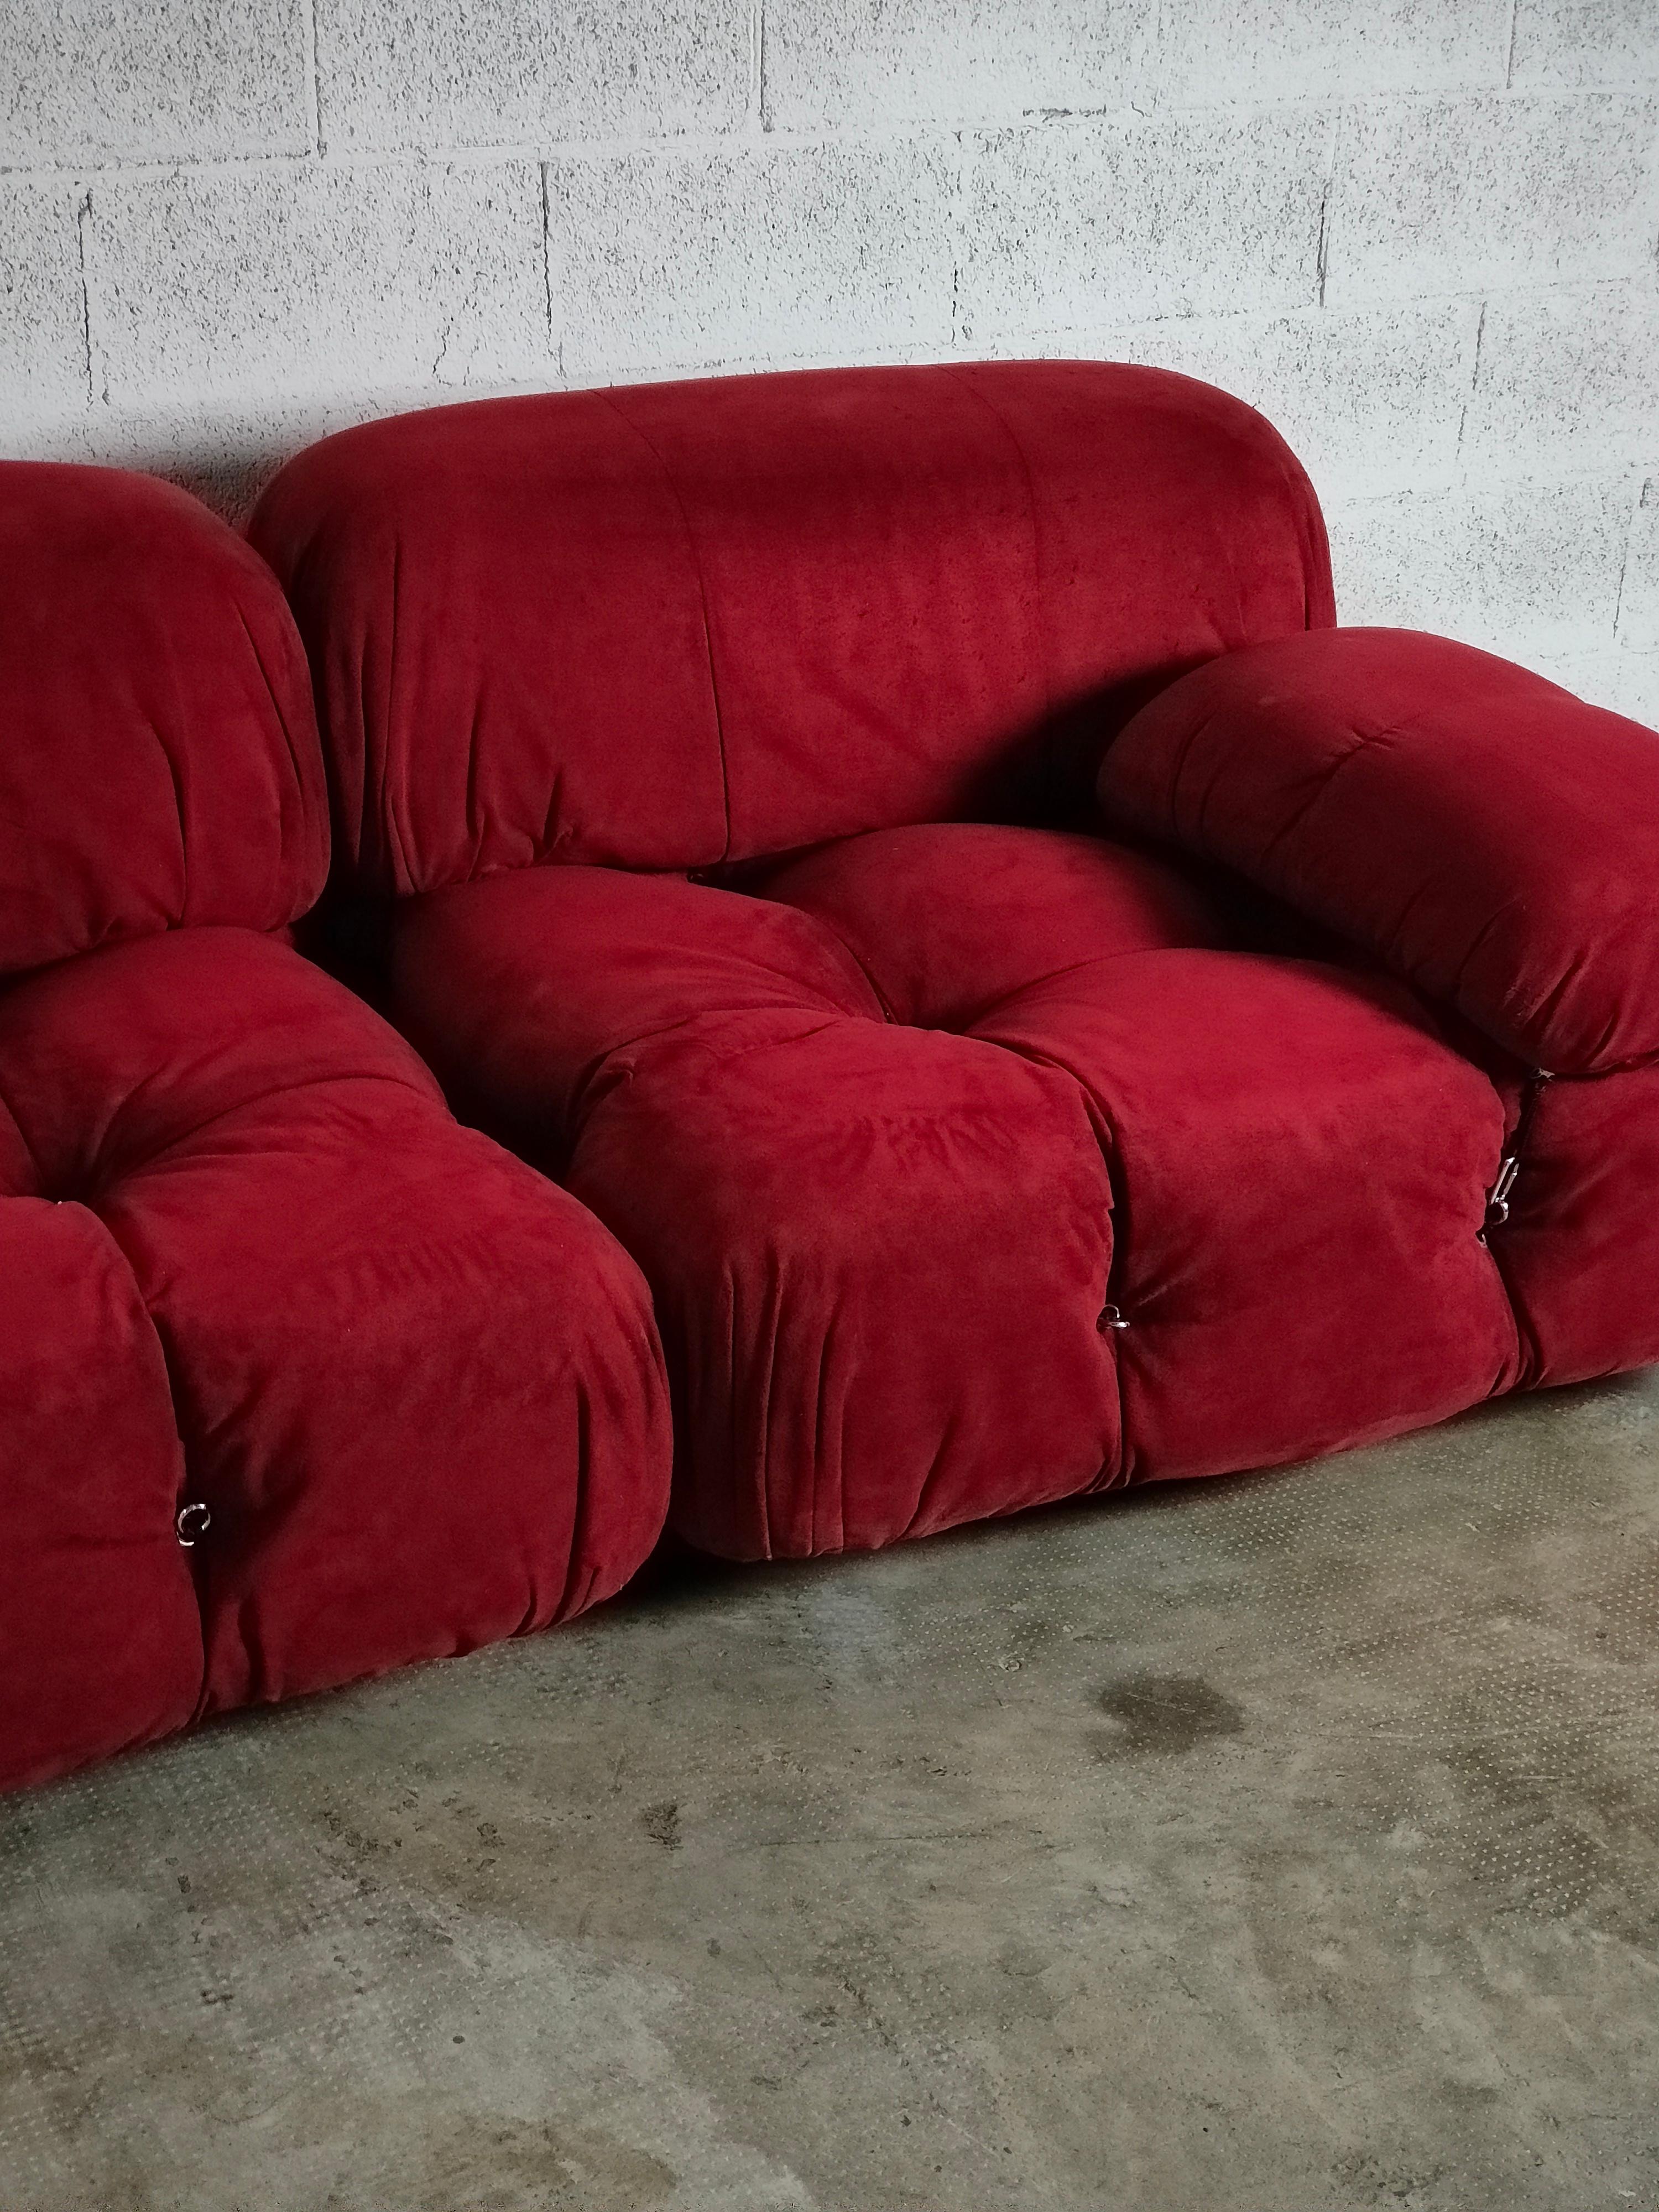 Camaleonda Red Sofa by Mario Bellini for B&B Italia, 1970s In Good Condition For Sale In Padova, IT